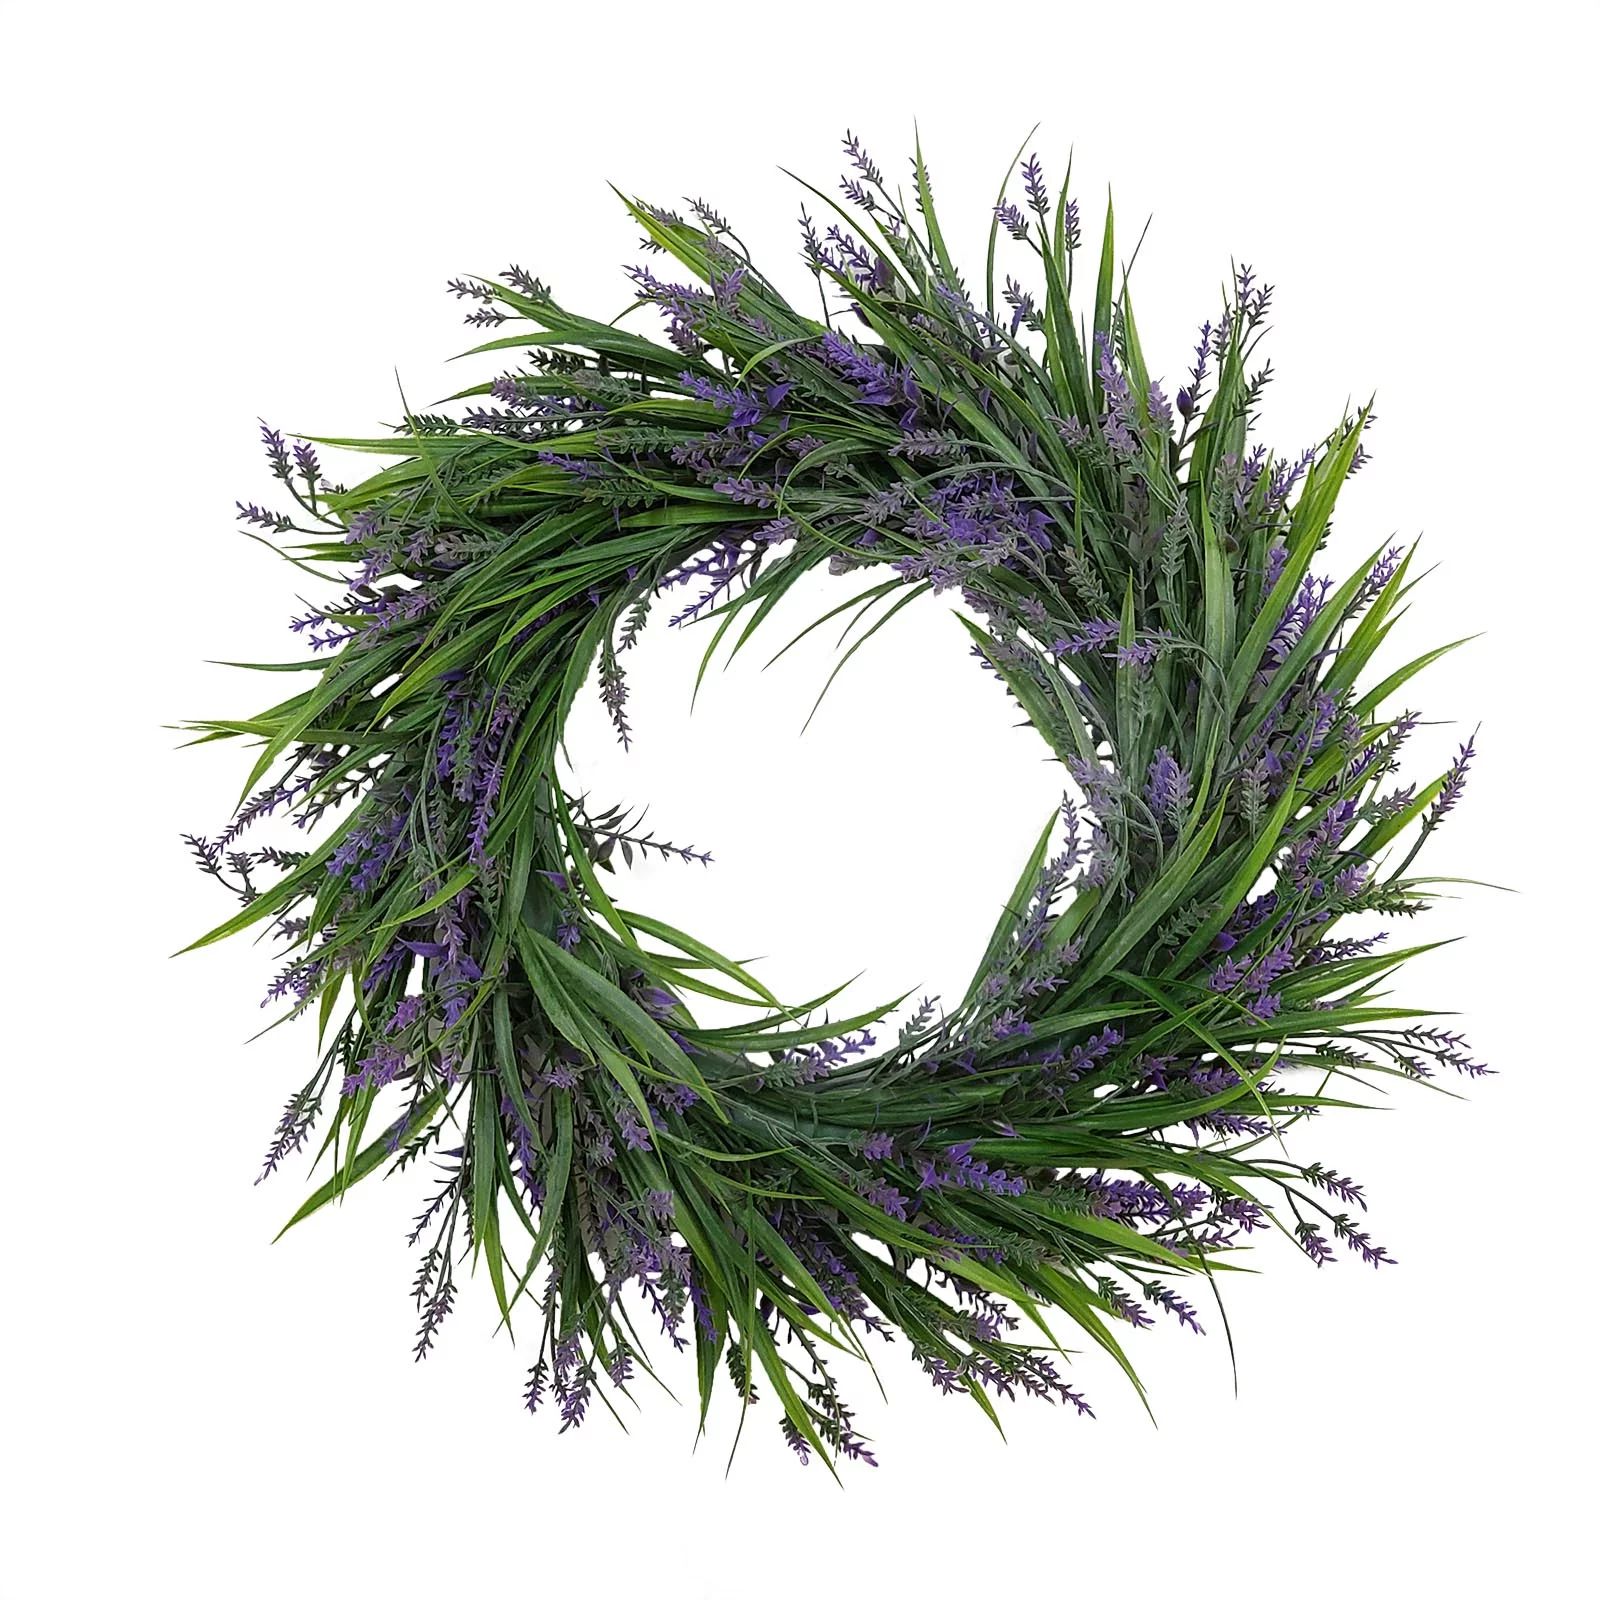 Mainstays 18in Indoor Artificial Lavender Wreath, Lavender, Purple Color. | Walmart (US)